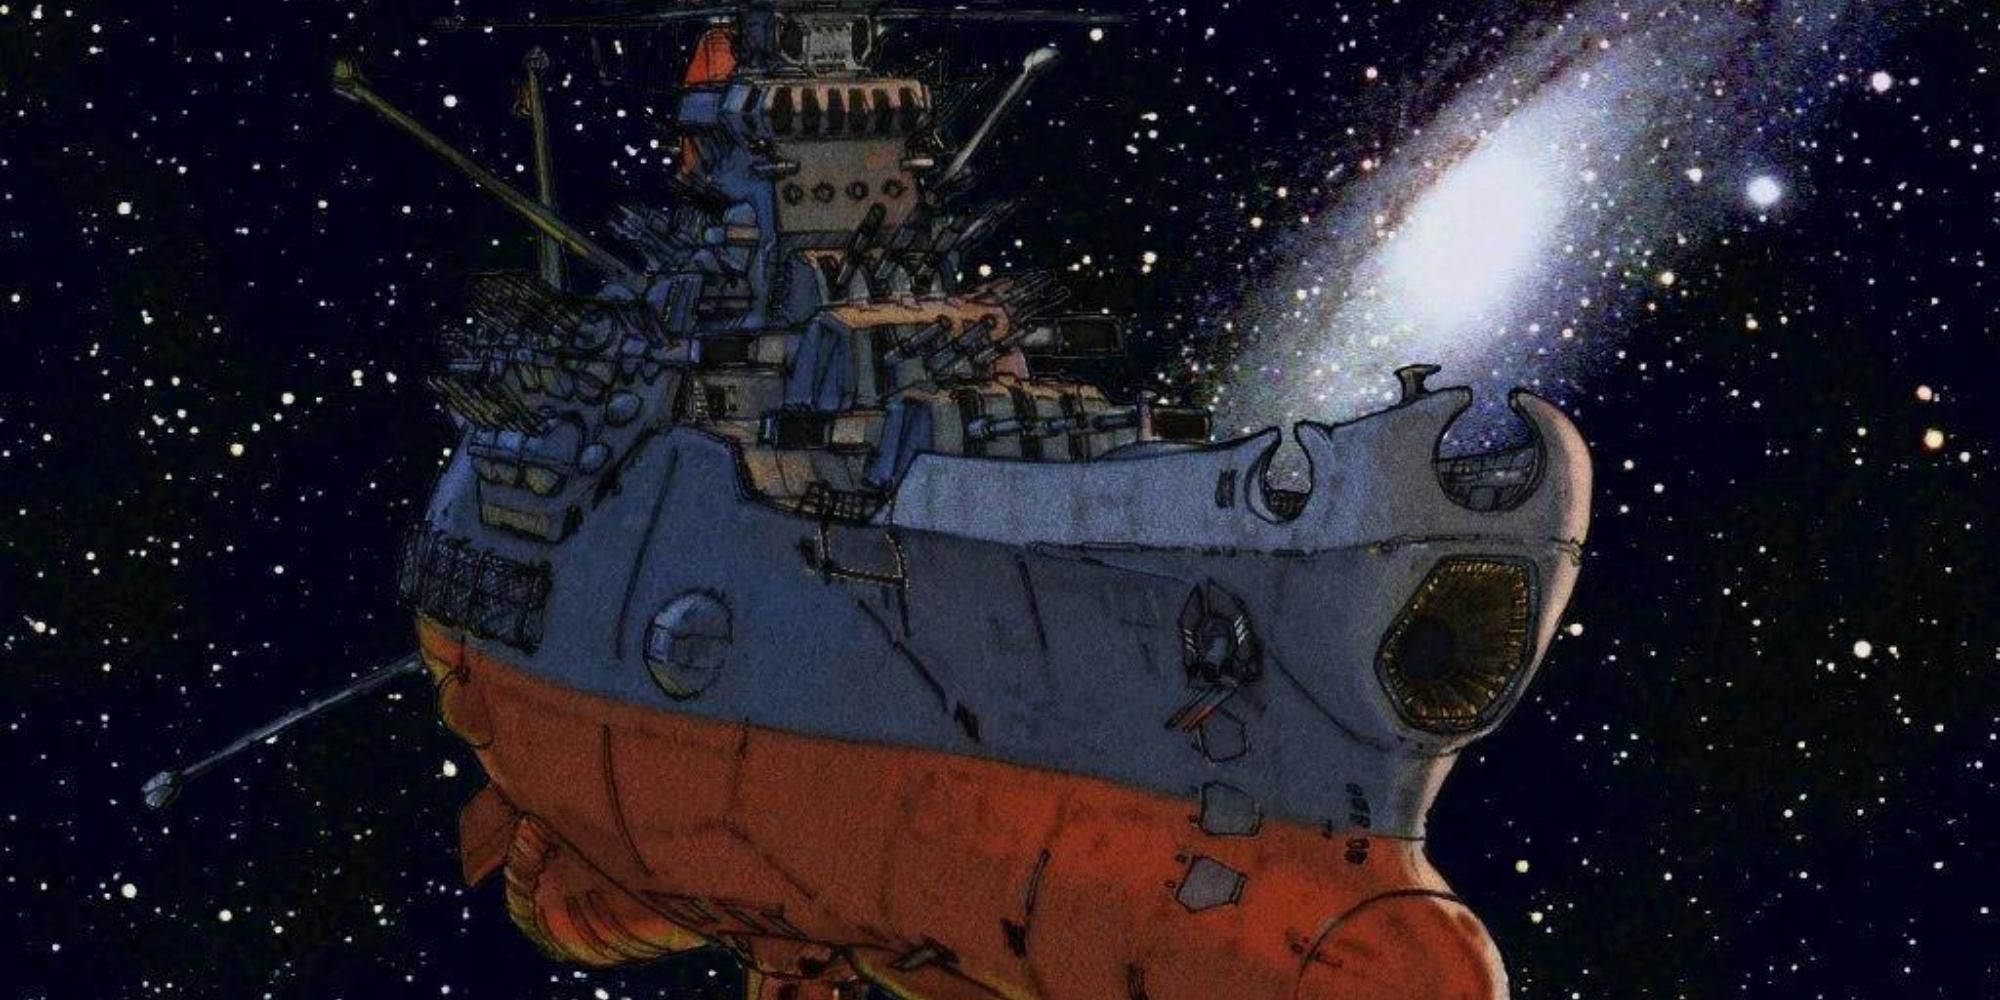 Spaceship Yamato The Spaceship Battleship Yamato